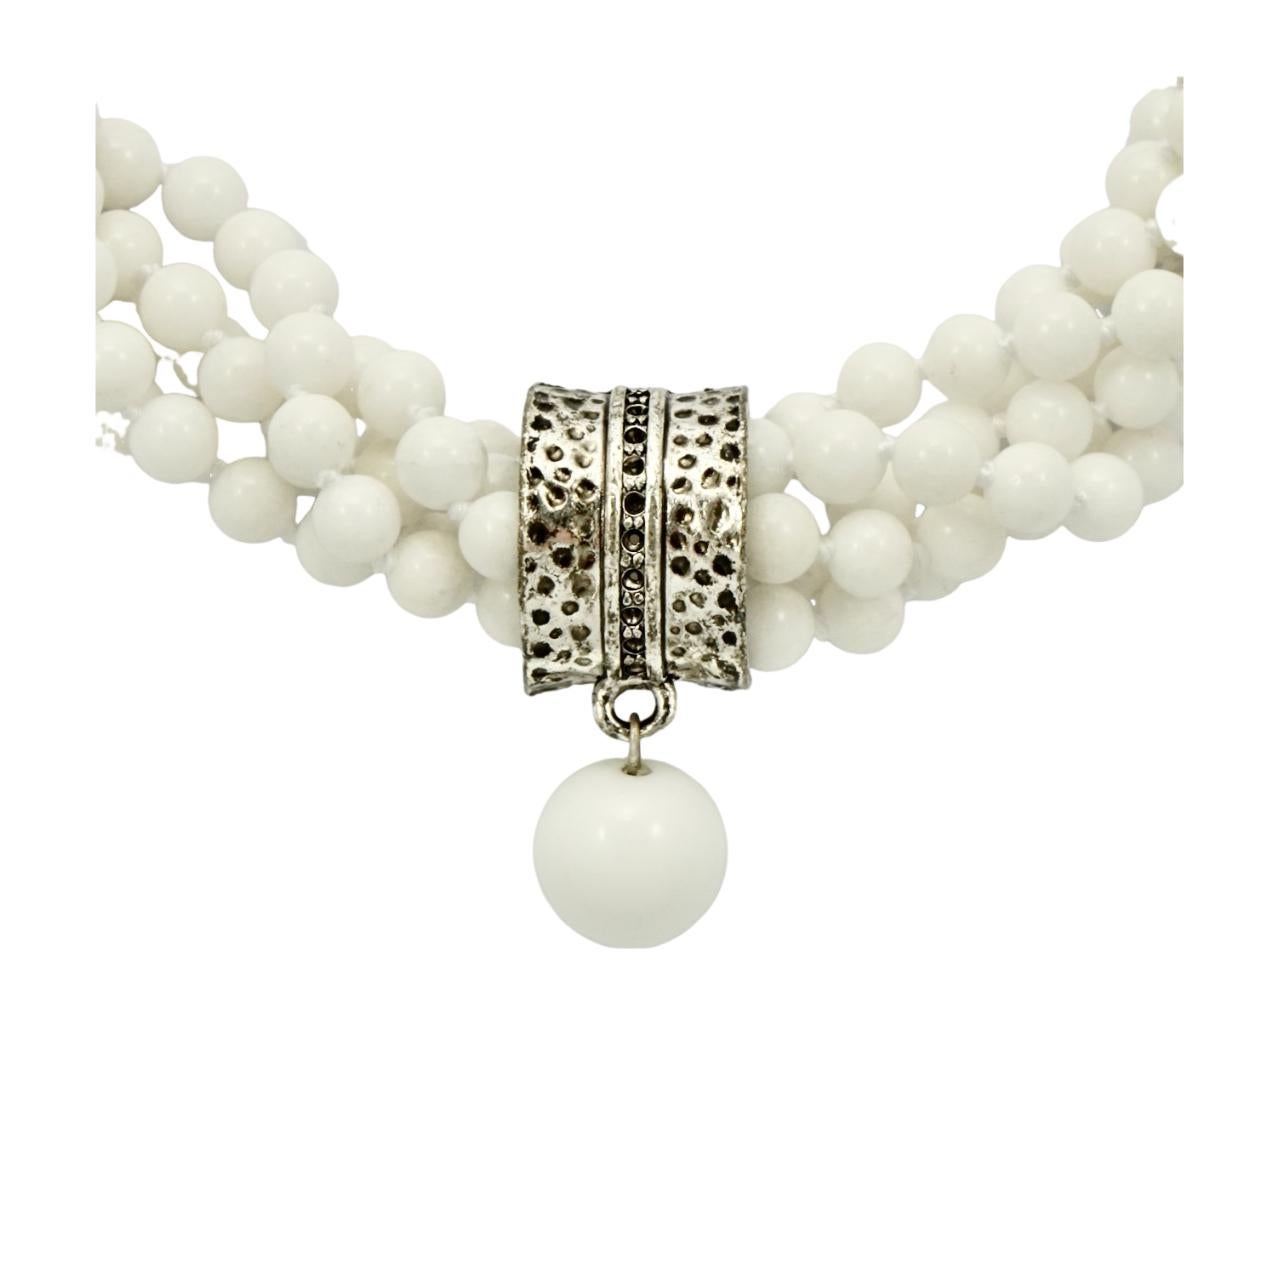 Wunderschöne fünfsträngige, gedrehte weiße Perlenkette mit einem versilberten und schwarz emaillierten Mittelstück. Die Perlen werden zwischen den einzelnen Perlen verknotet, und das Mittelstück ist frei beweglich auf der Halskette. Der Anhänger ist